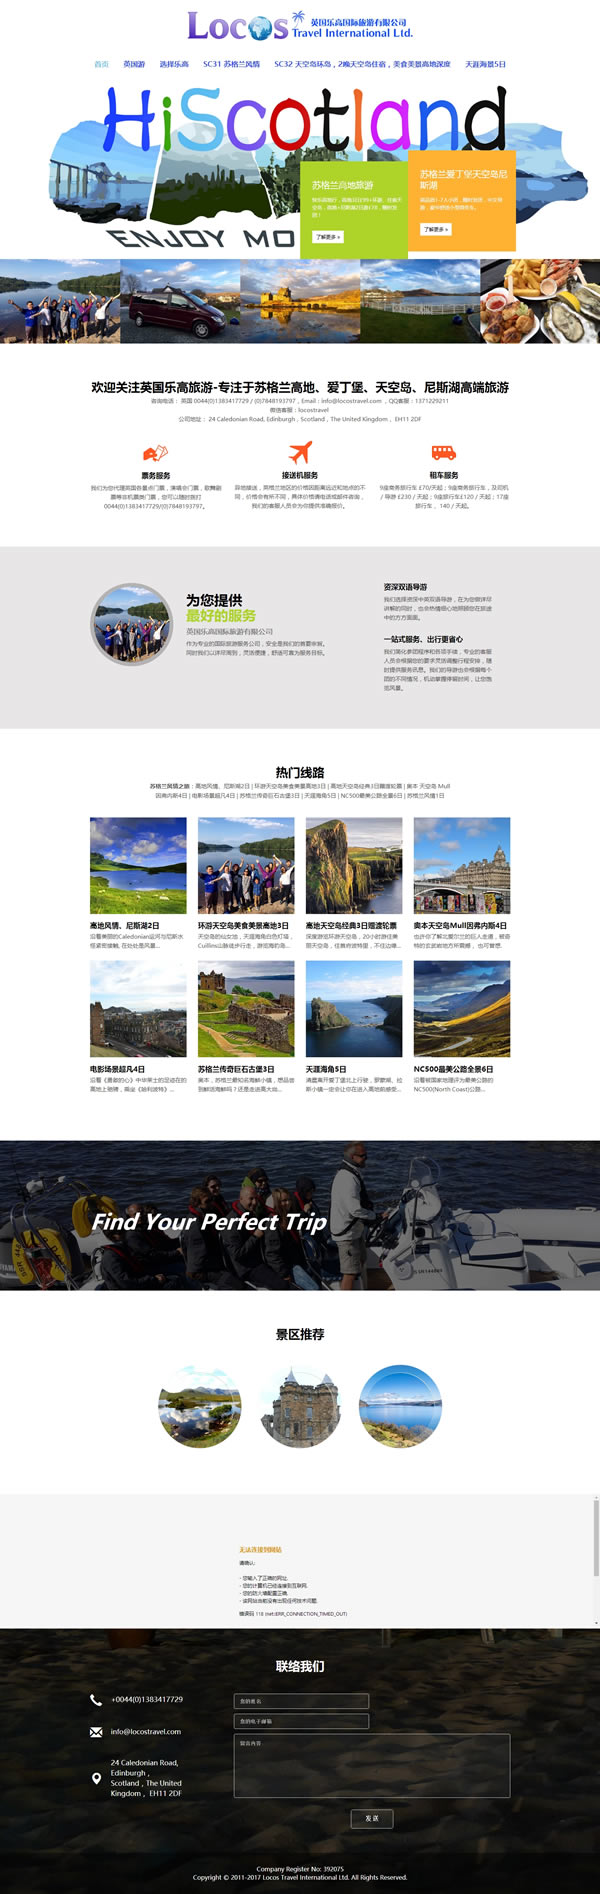 英国苏格兰高地旅游 苏格兰爱丁堡天空岛尼斯湖 Scotland Edinburgh highland skye Loch Ness travel tour_20180301093051.jpg